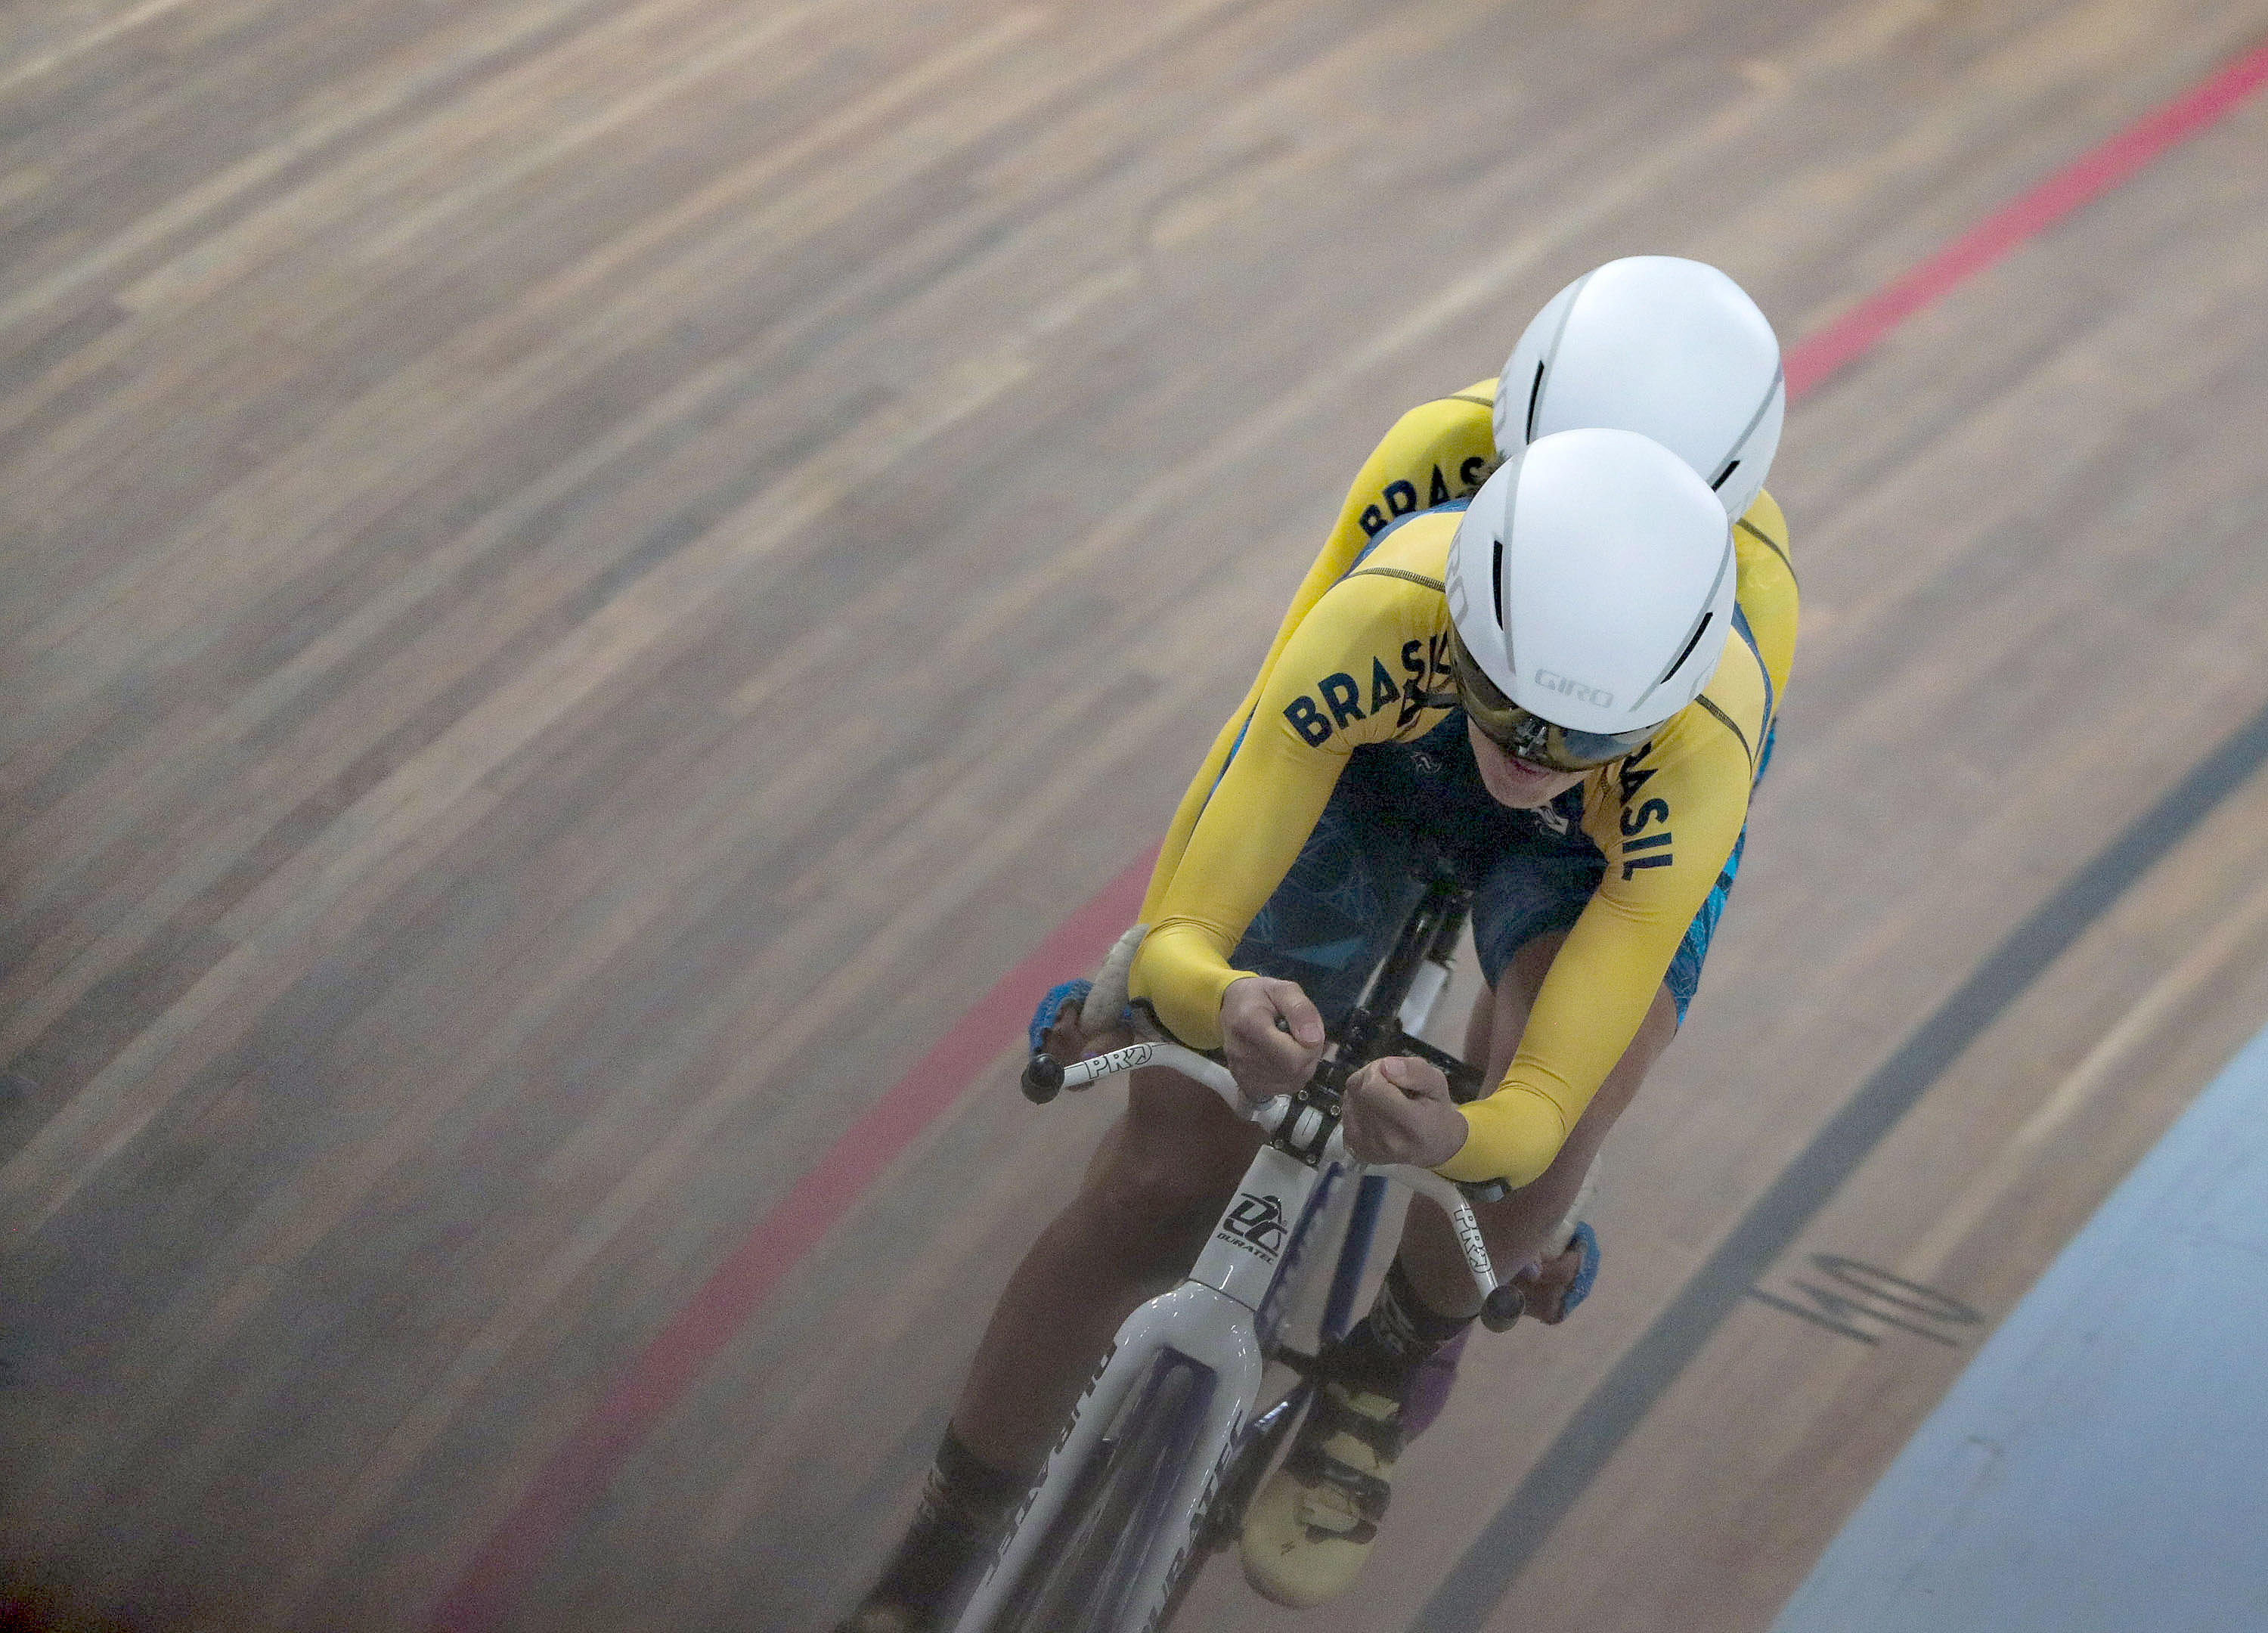  Na foto, vê-se dois ciclistas em uma bicicleta tandem branca durante uma prova em um velôdromo com pista de taco marrom e uma faixa vermelha; um ciclista está atrás do outro e ambos vestem o uniforme do Brasil, camiseta amarela e capacete branco.